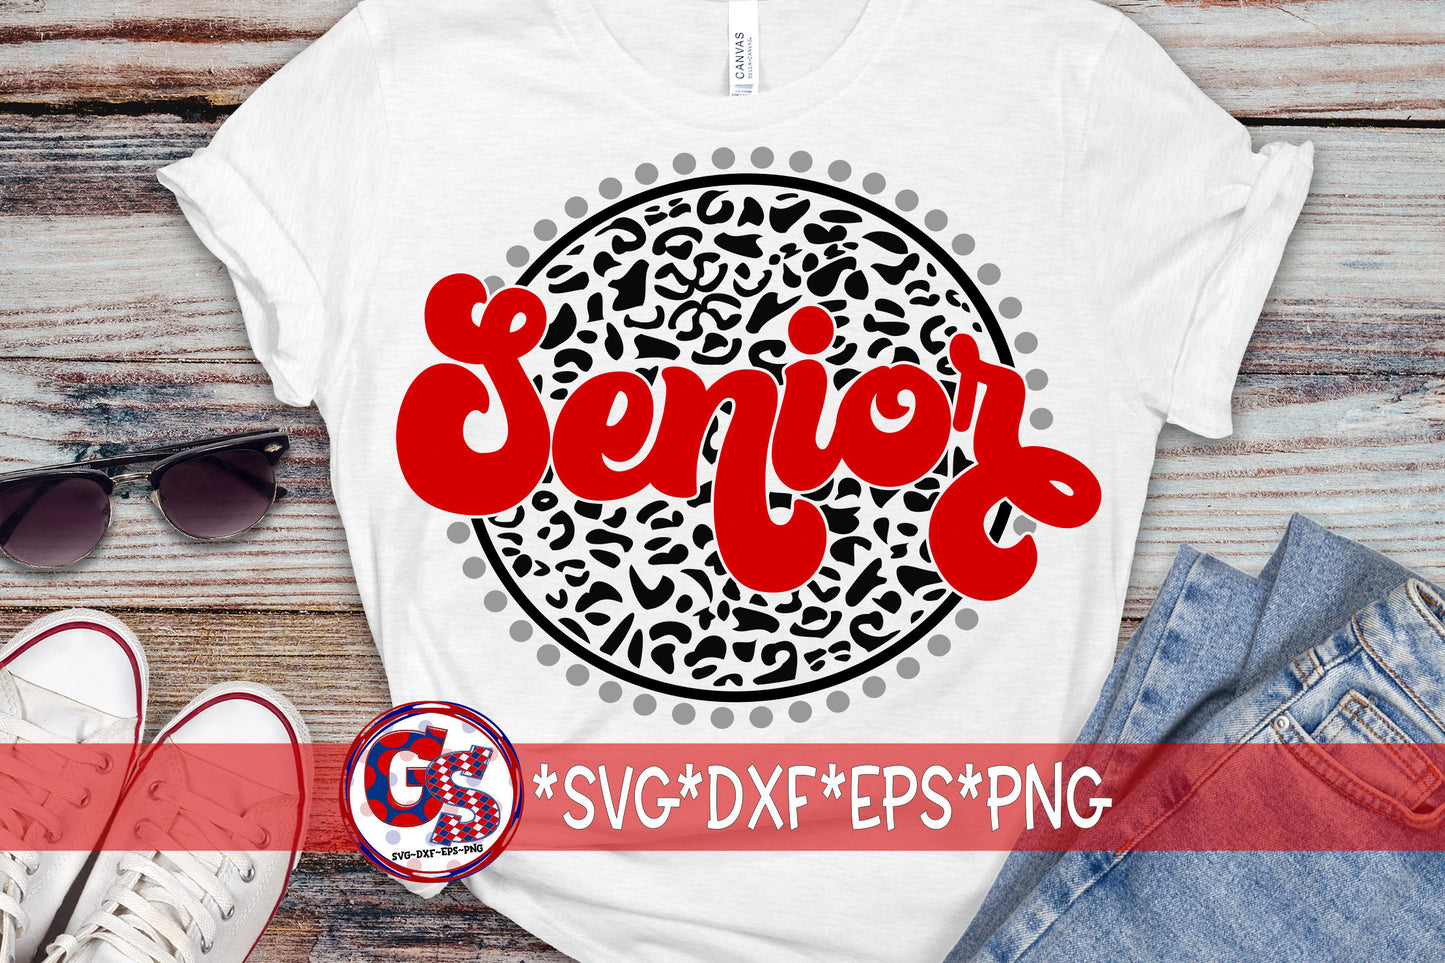 Retro Leopard Senior SvG dxf eps png | Graduation SvG | Senior SvG | Senior DxF | Graduate SvG | Retro Senior SvG Instant Download Cut File